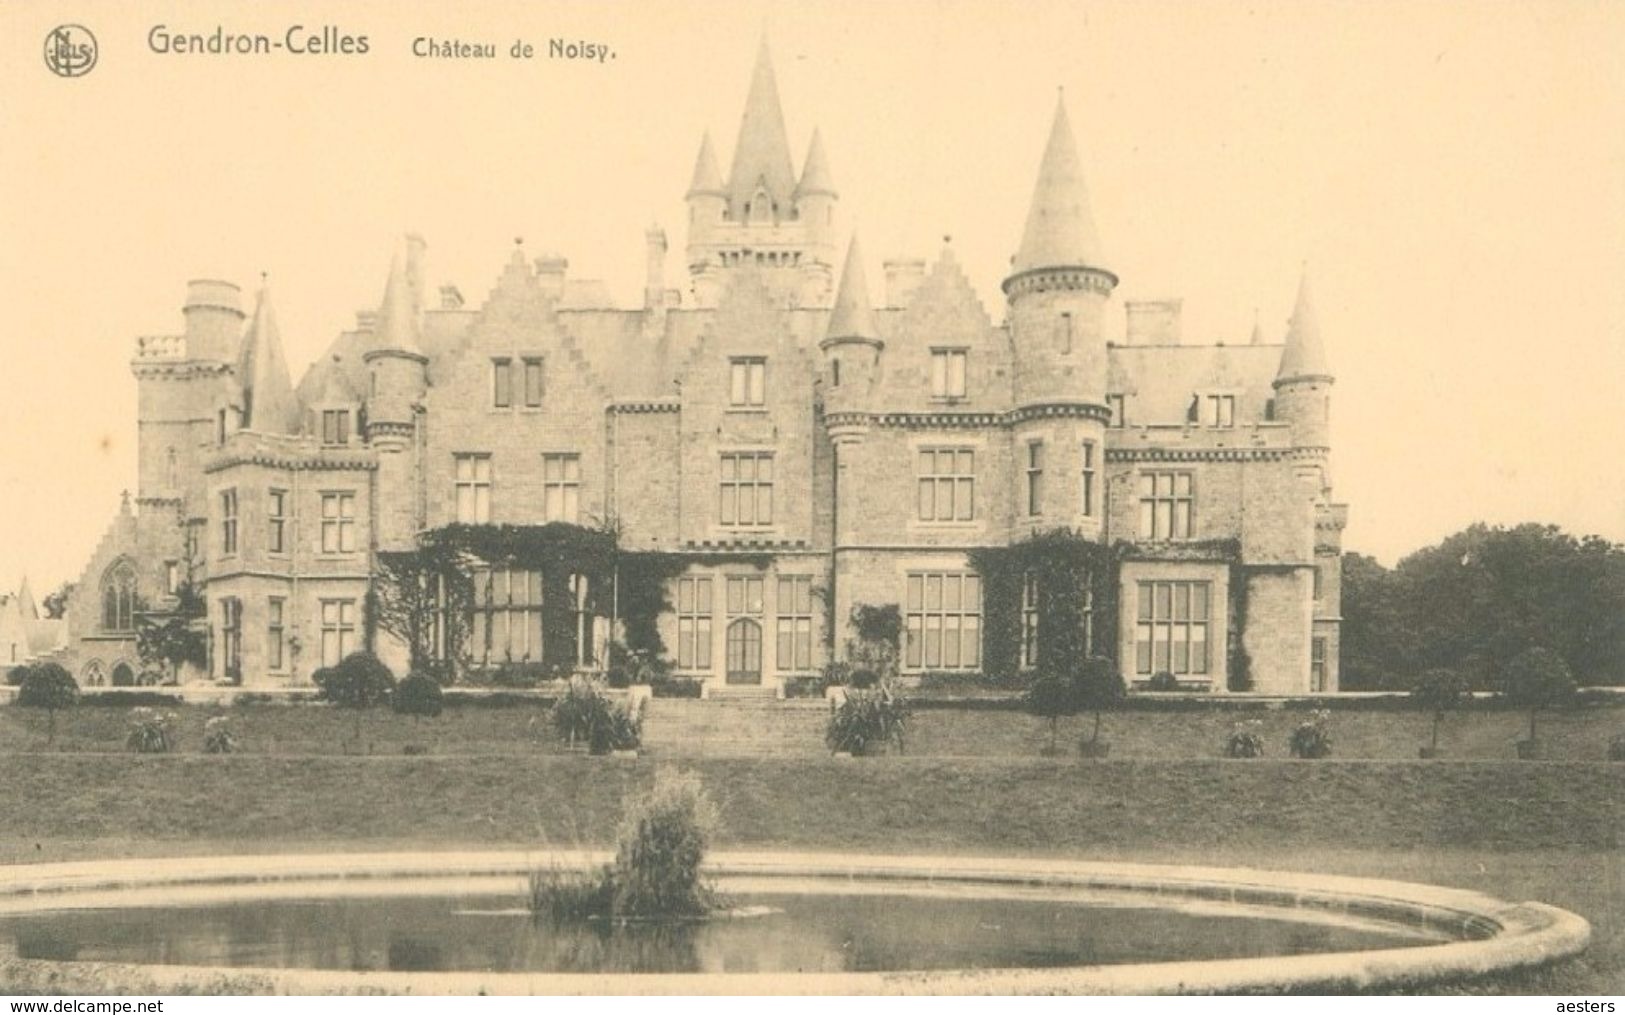 Gendron-Celles; Château De Noisy - Non Voyagé. (Nels) - Houyet